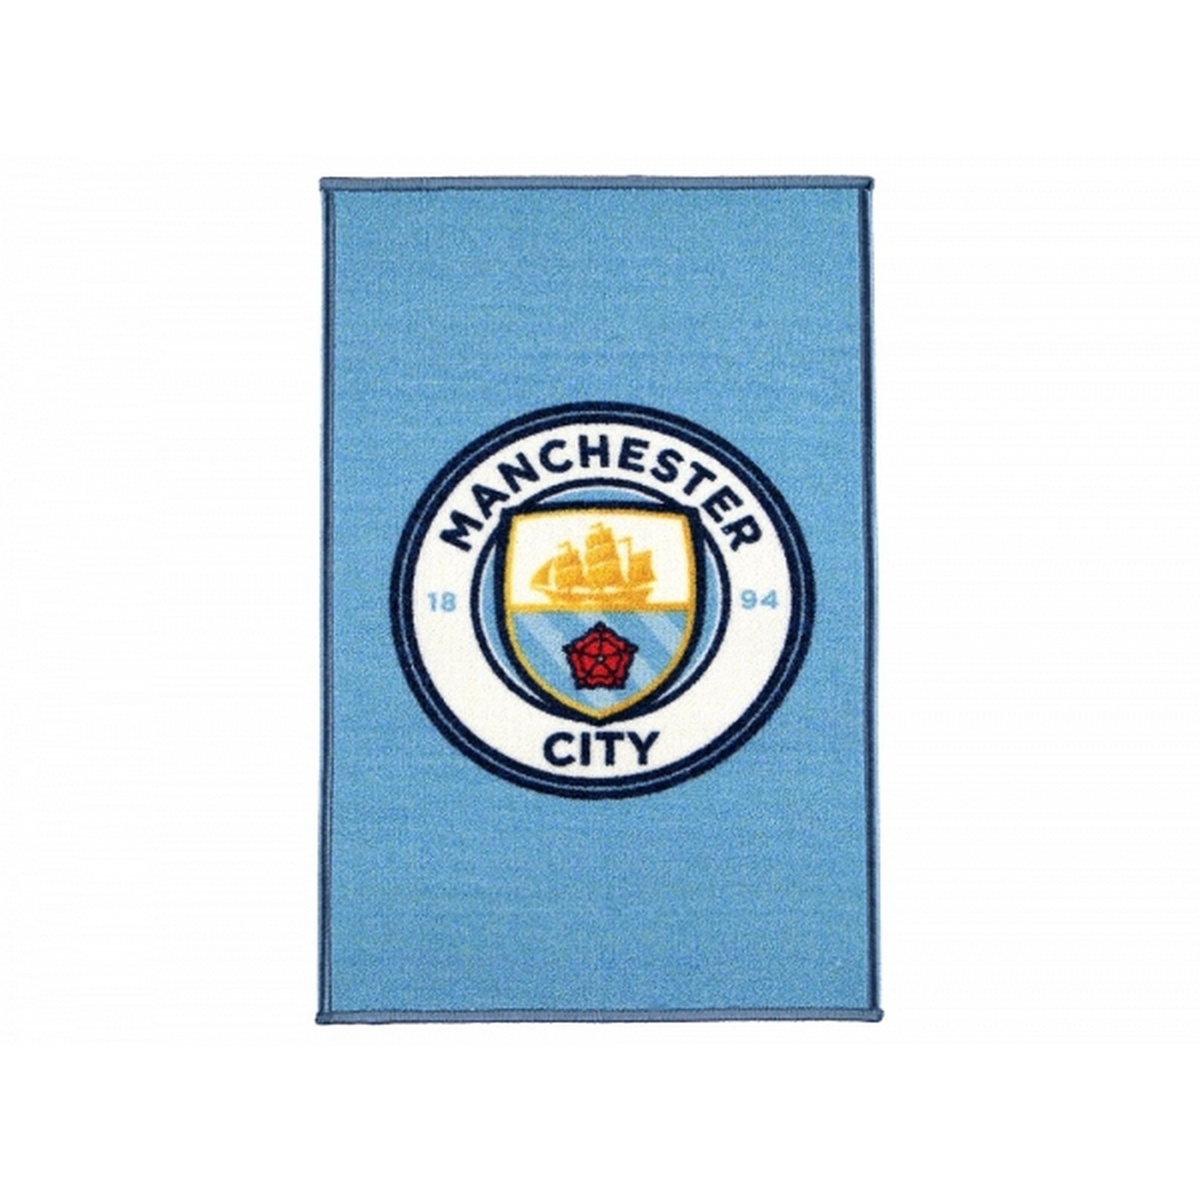 楽天市場 マンチェスター シティ フットボールクラブ Manchester City Fc オフィシャル商品 ロゴ入り ラグ マット 楽天海外直送 Pertemba Japan